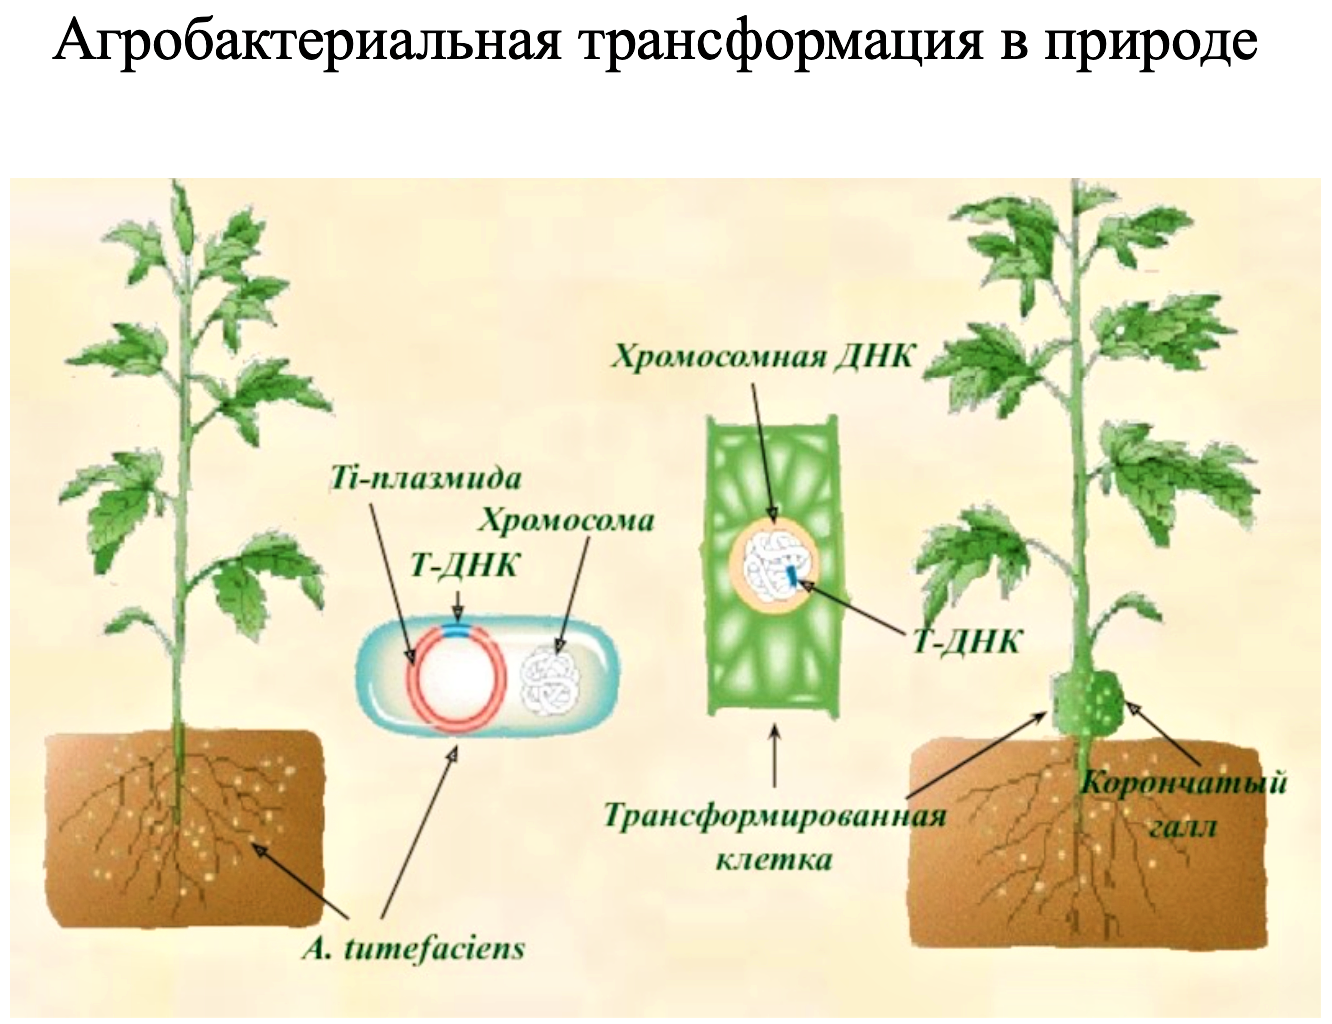 Трансформация средств. Агробактериальной трансформации растений. Методы трансформации растений. Метод агробактериальной трансформации. Генетическая трансформация растений.